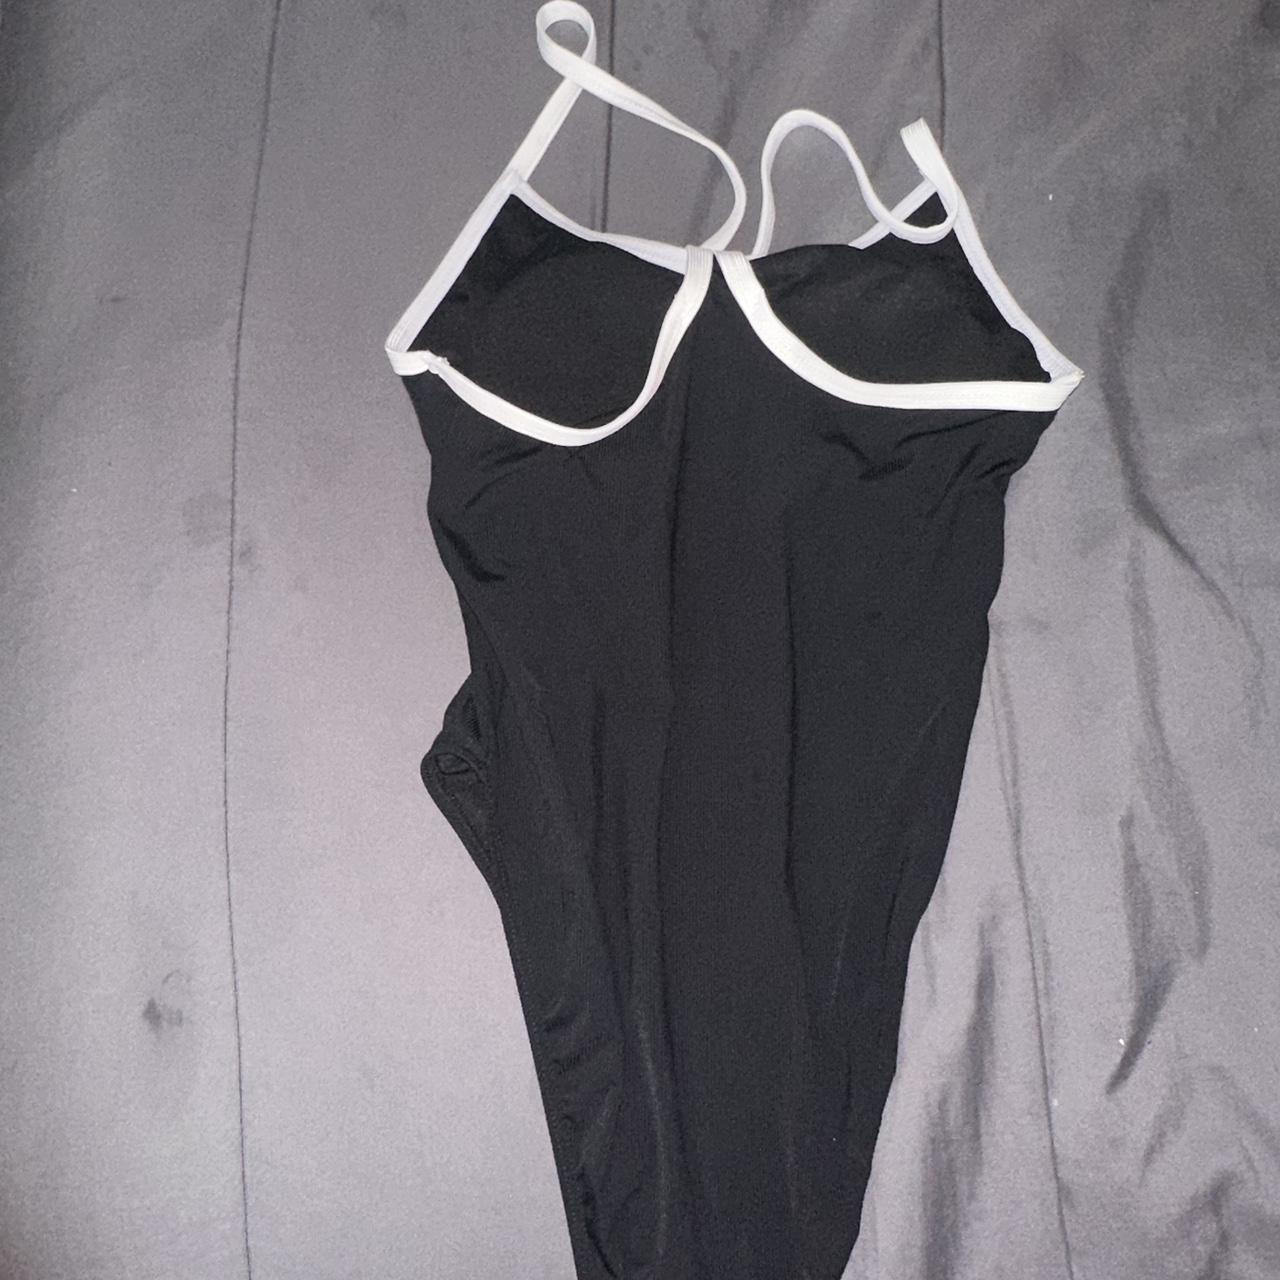 Chanel One-Piece Swimsuit Bikini in Black. Not sure... - Depop